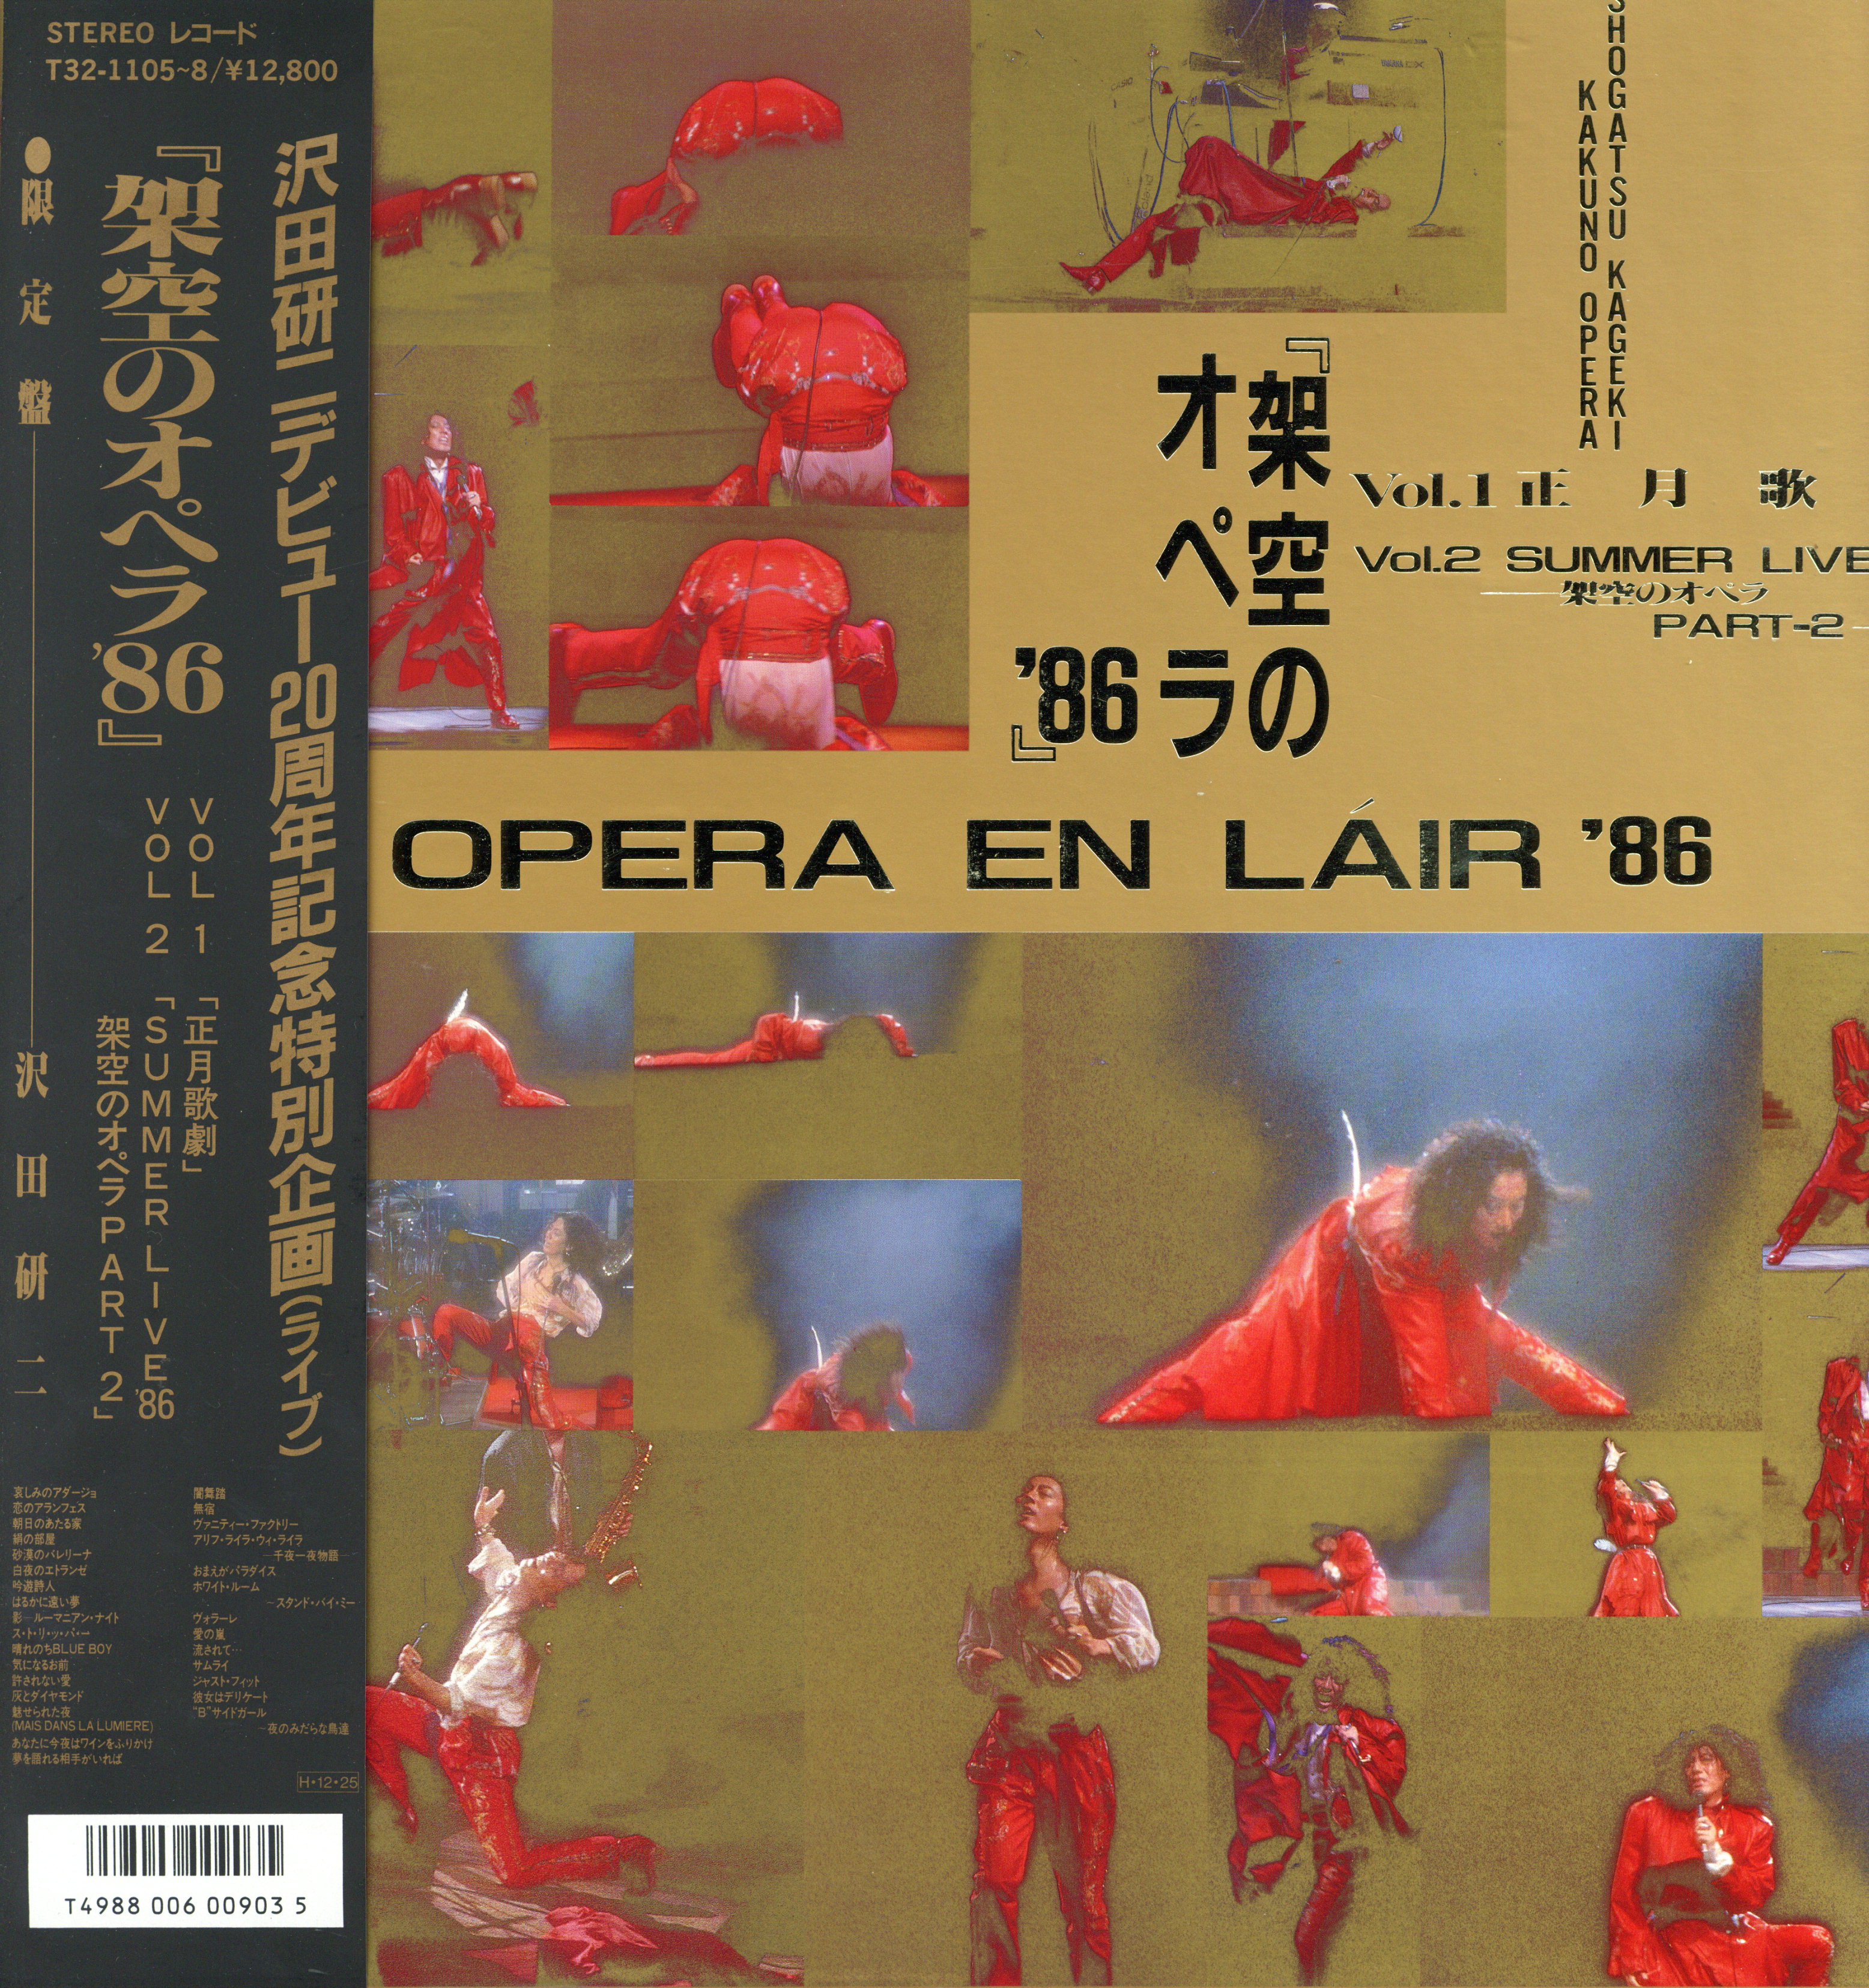 沢田研二 架空のオペラ86 特別企画レコード1-